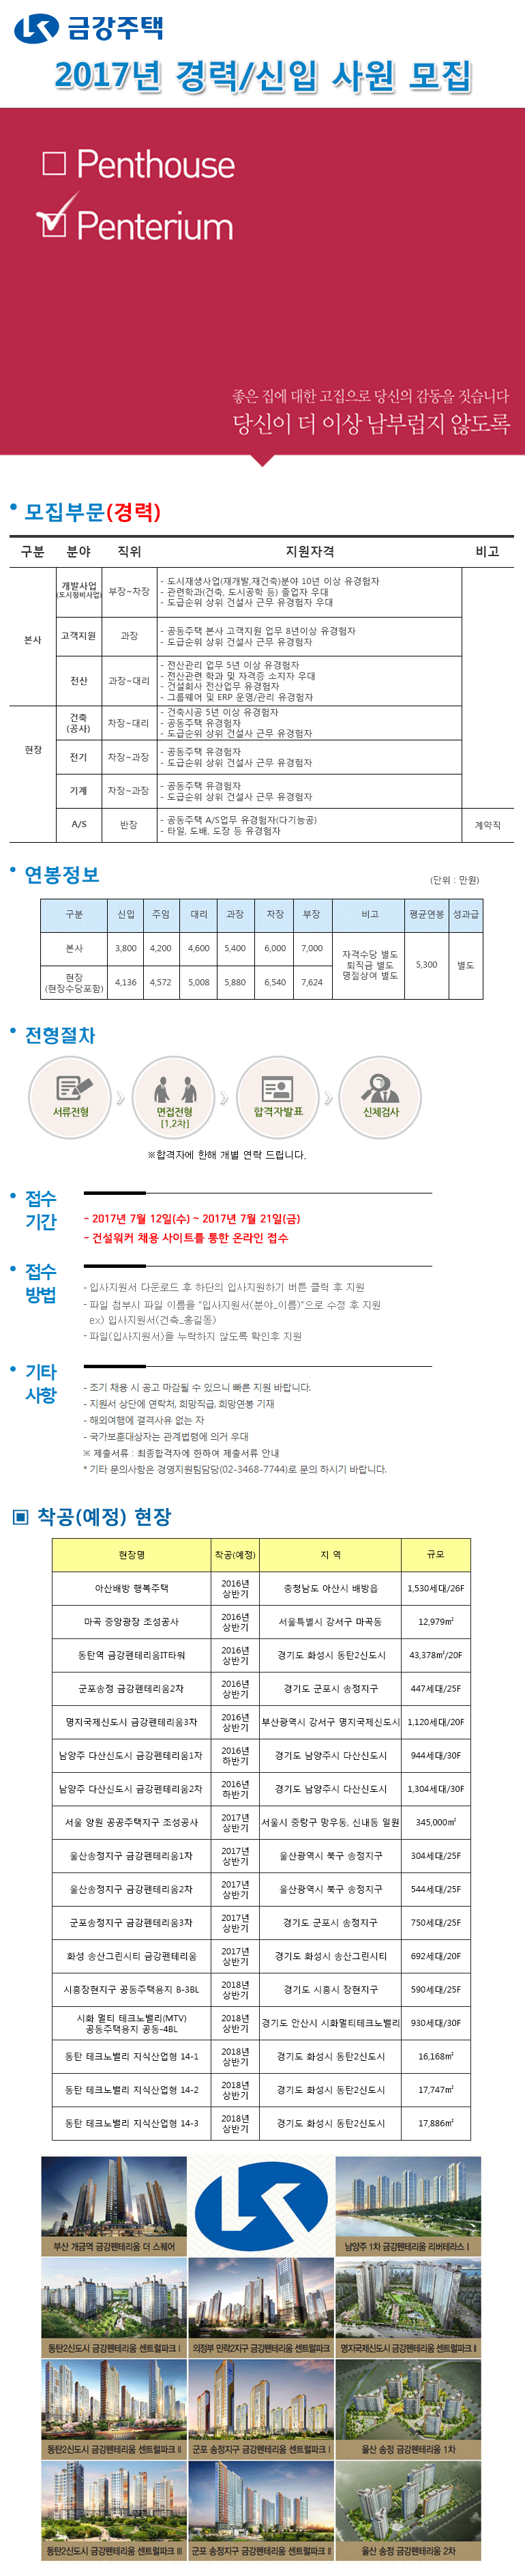 건설취업 금강주택 펜테리움√ 좋은집  경력/신입 구인정보